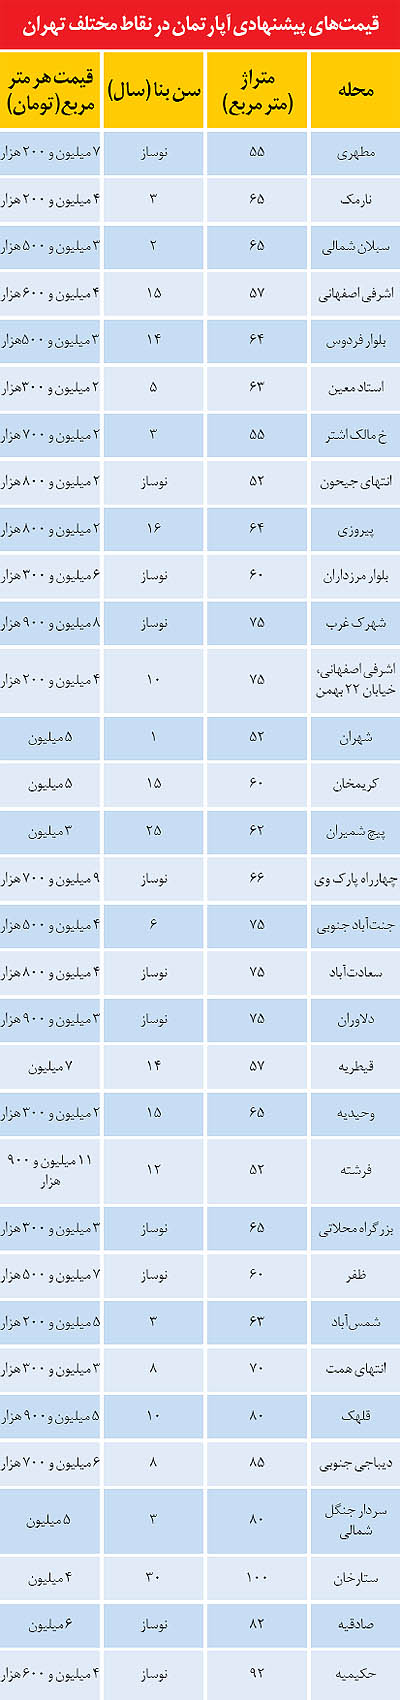 قیمت خرید آپارتمان در زمستان تهران (+جدول)